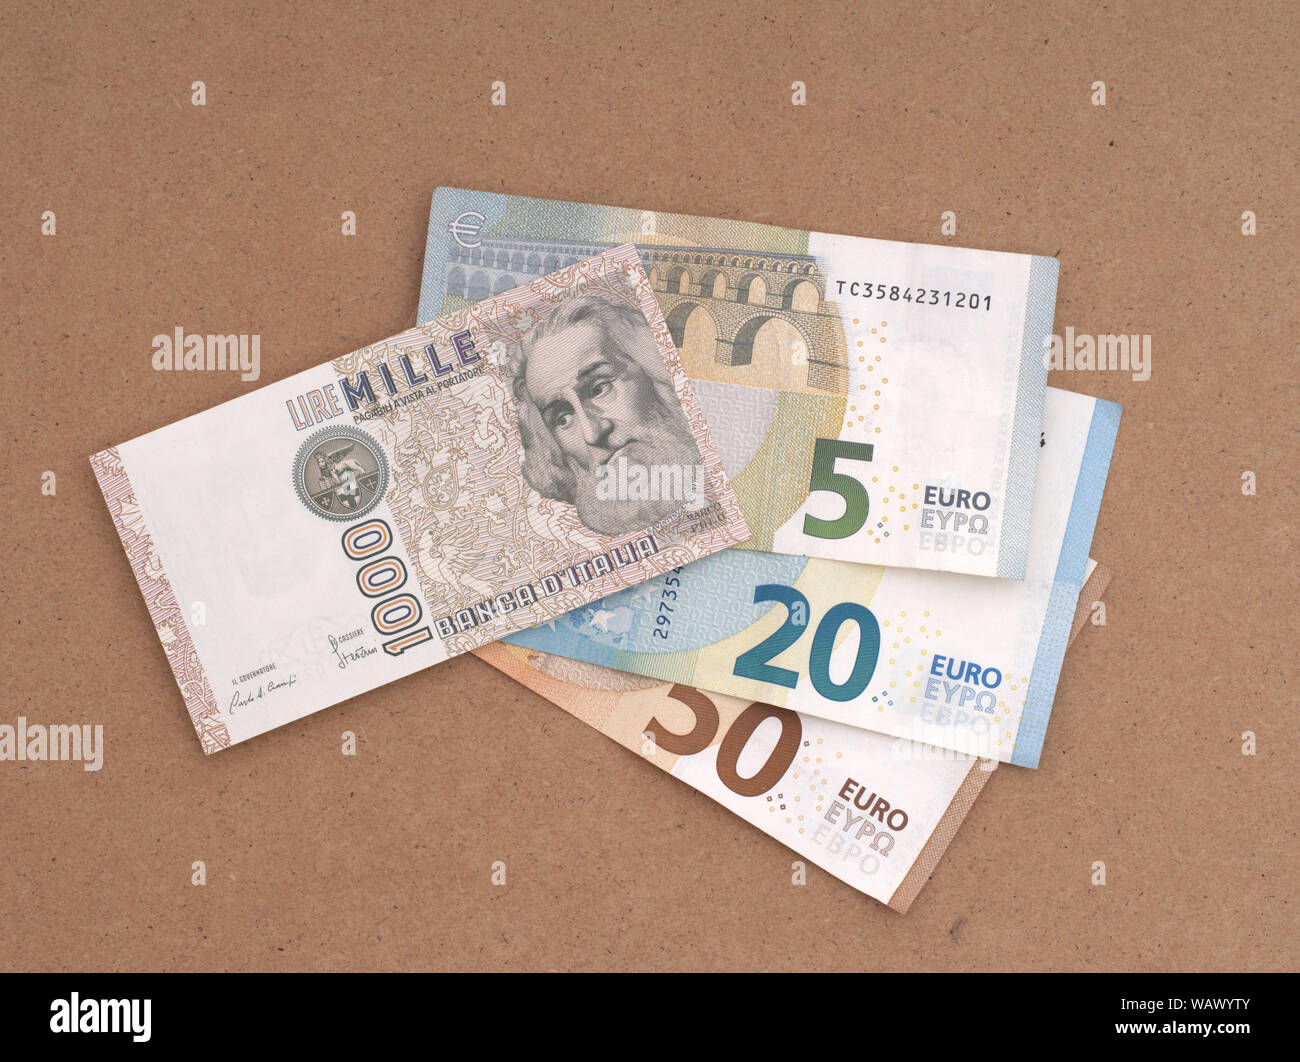 MASSA CARRARA, Italien - 14 AUGUST 2019: Italienische Lire alte und überholte Hinweis Overlays und Teil verdeckt neue Euro Geld. Stockfoto